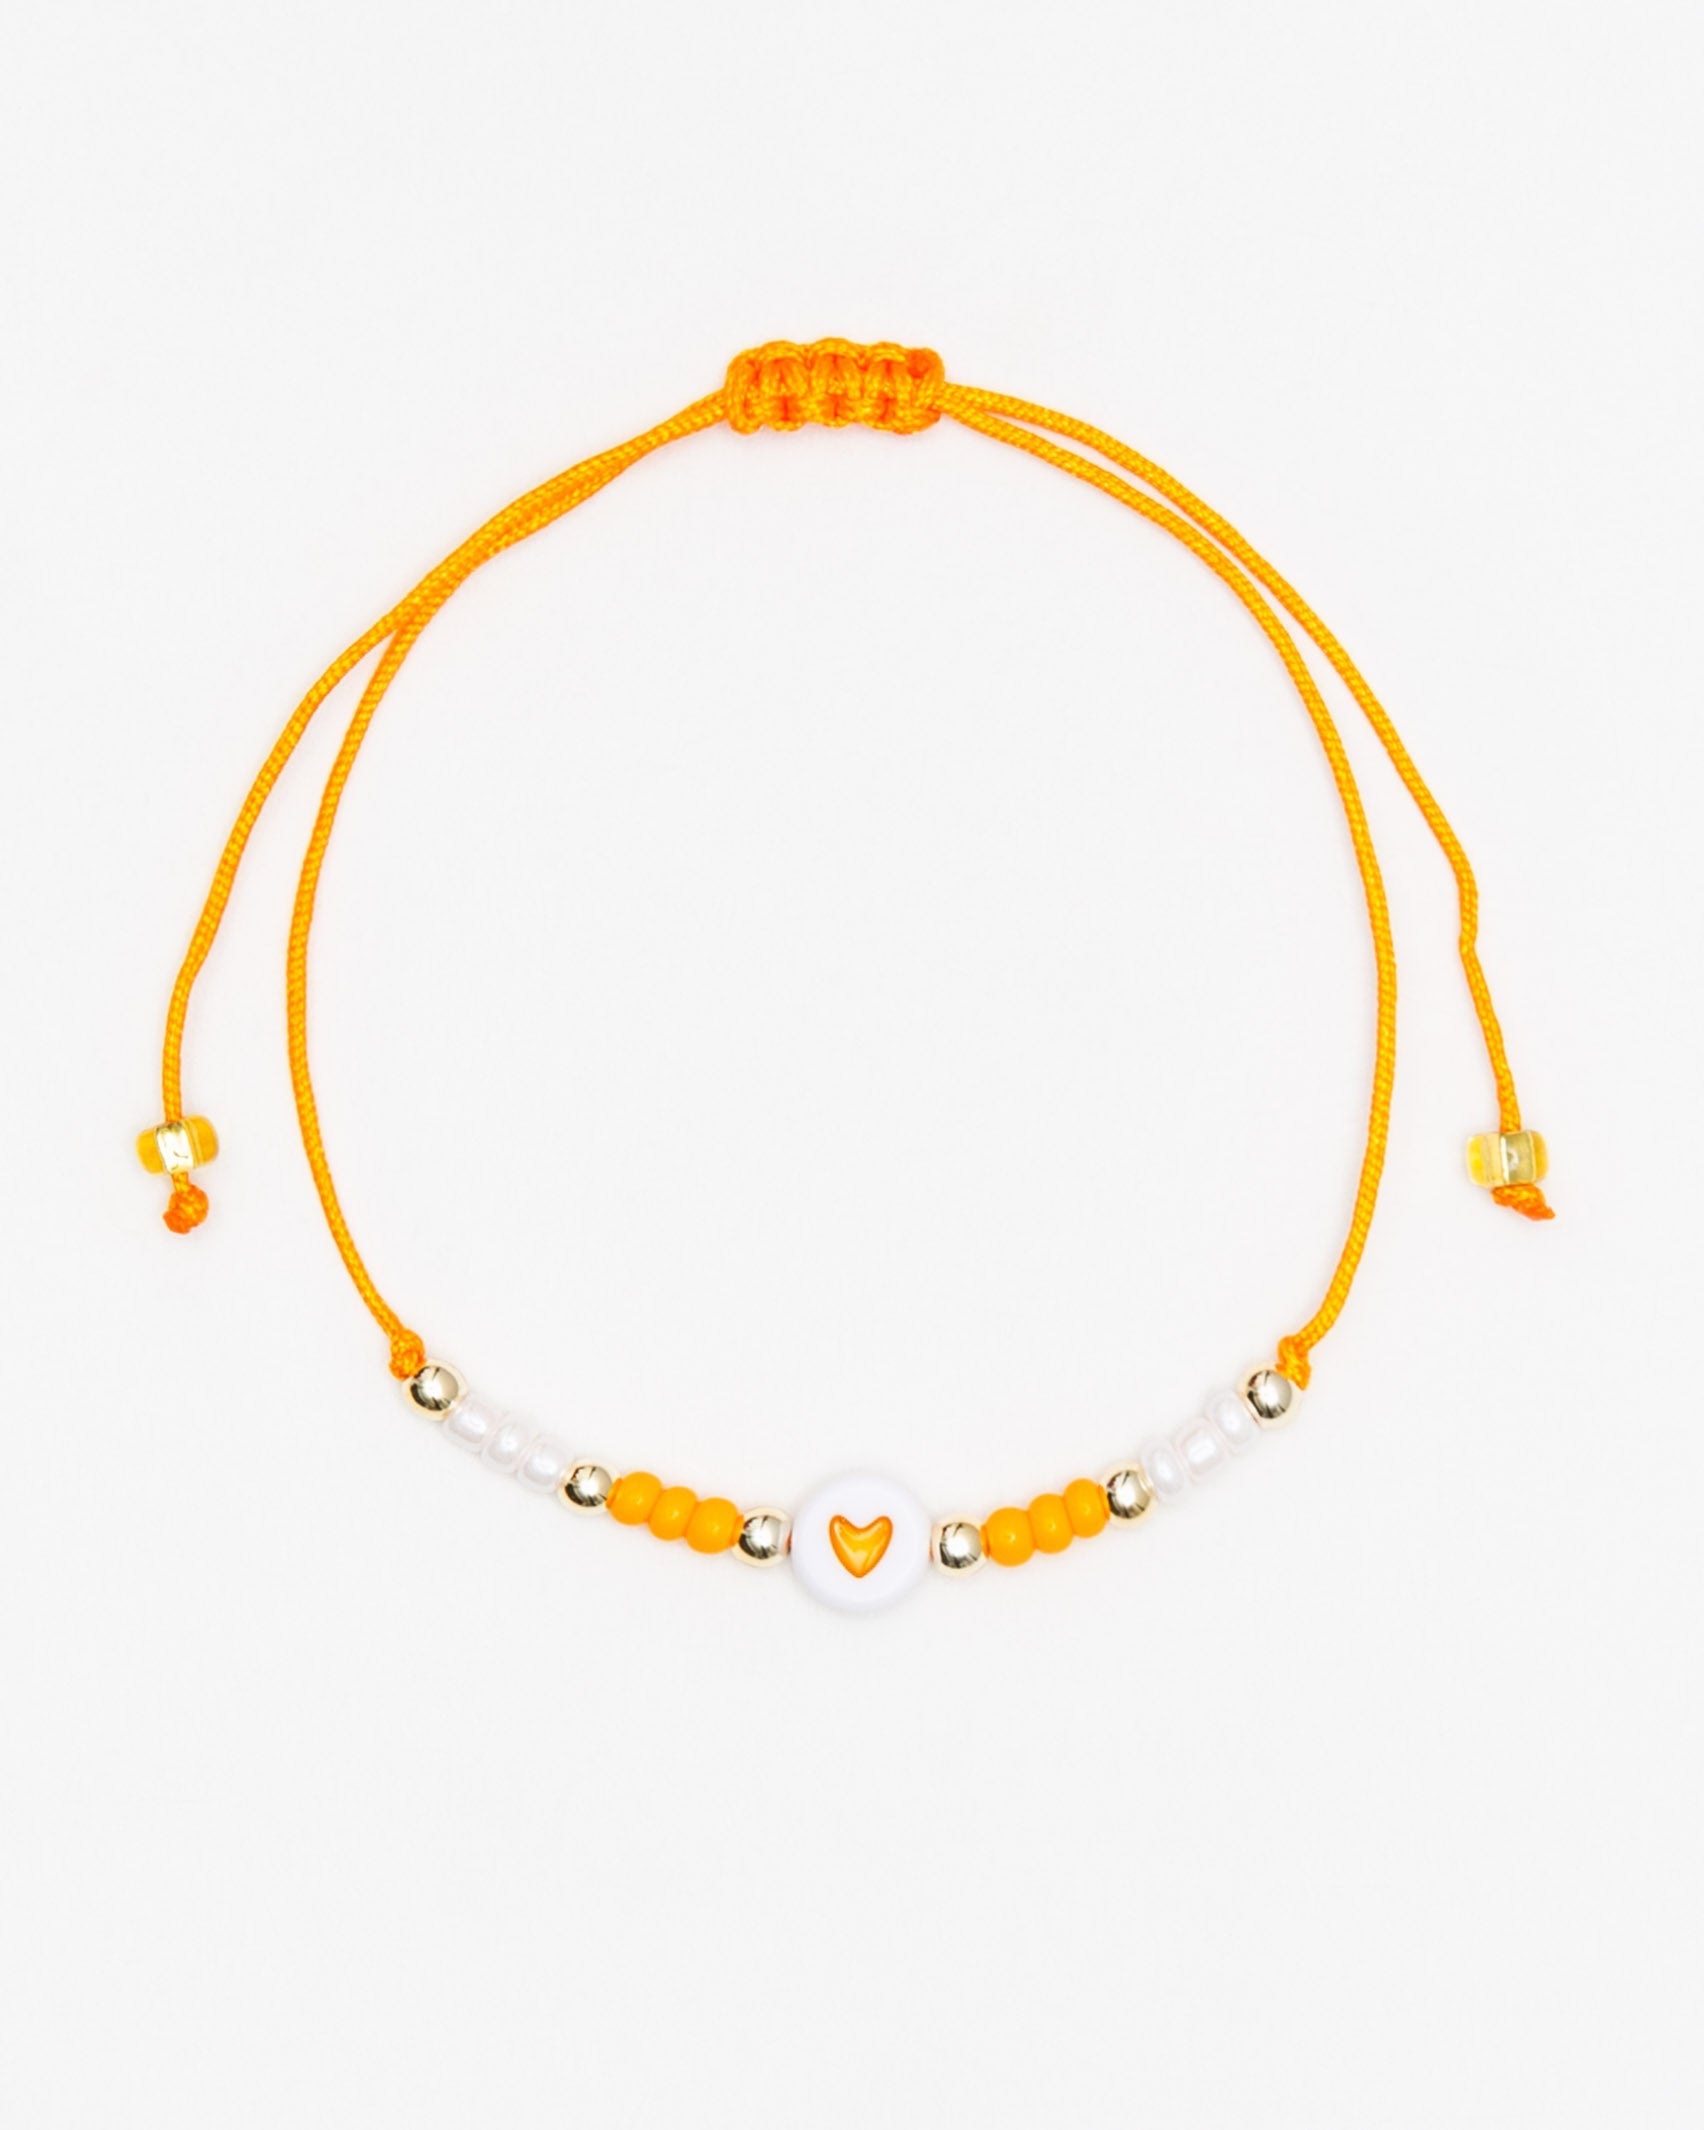 Feines Armband mit Herzchen - Broke + Schön#farbe_orange